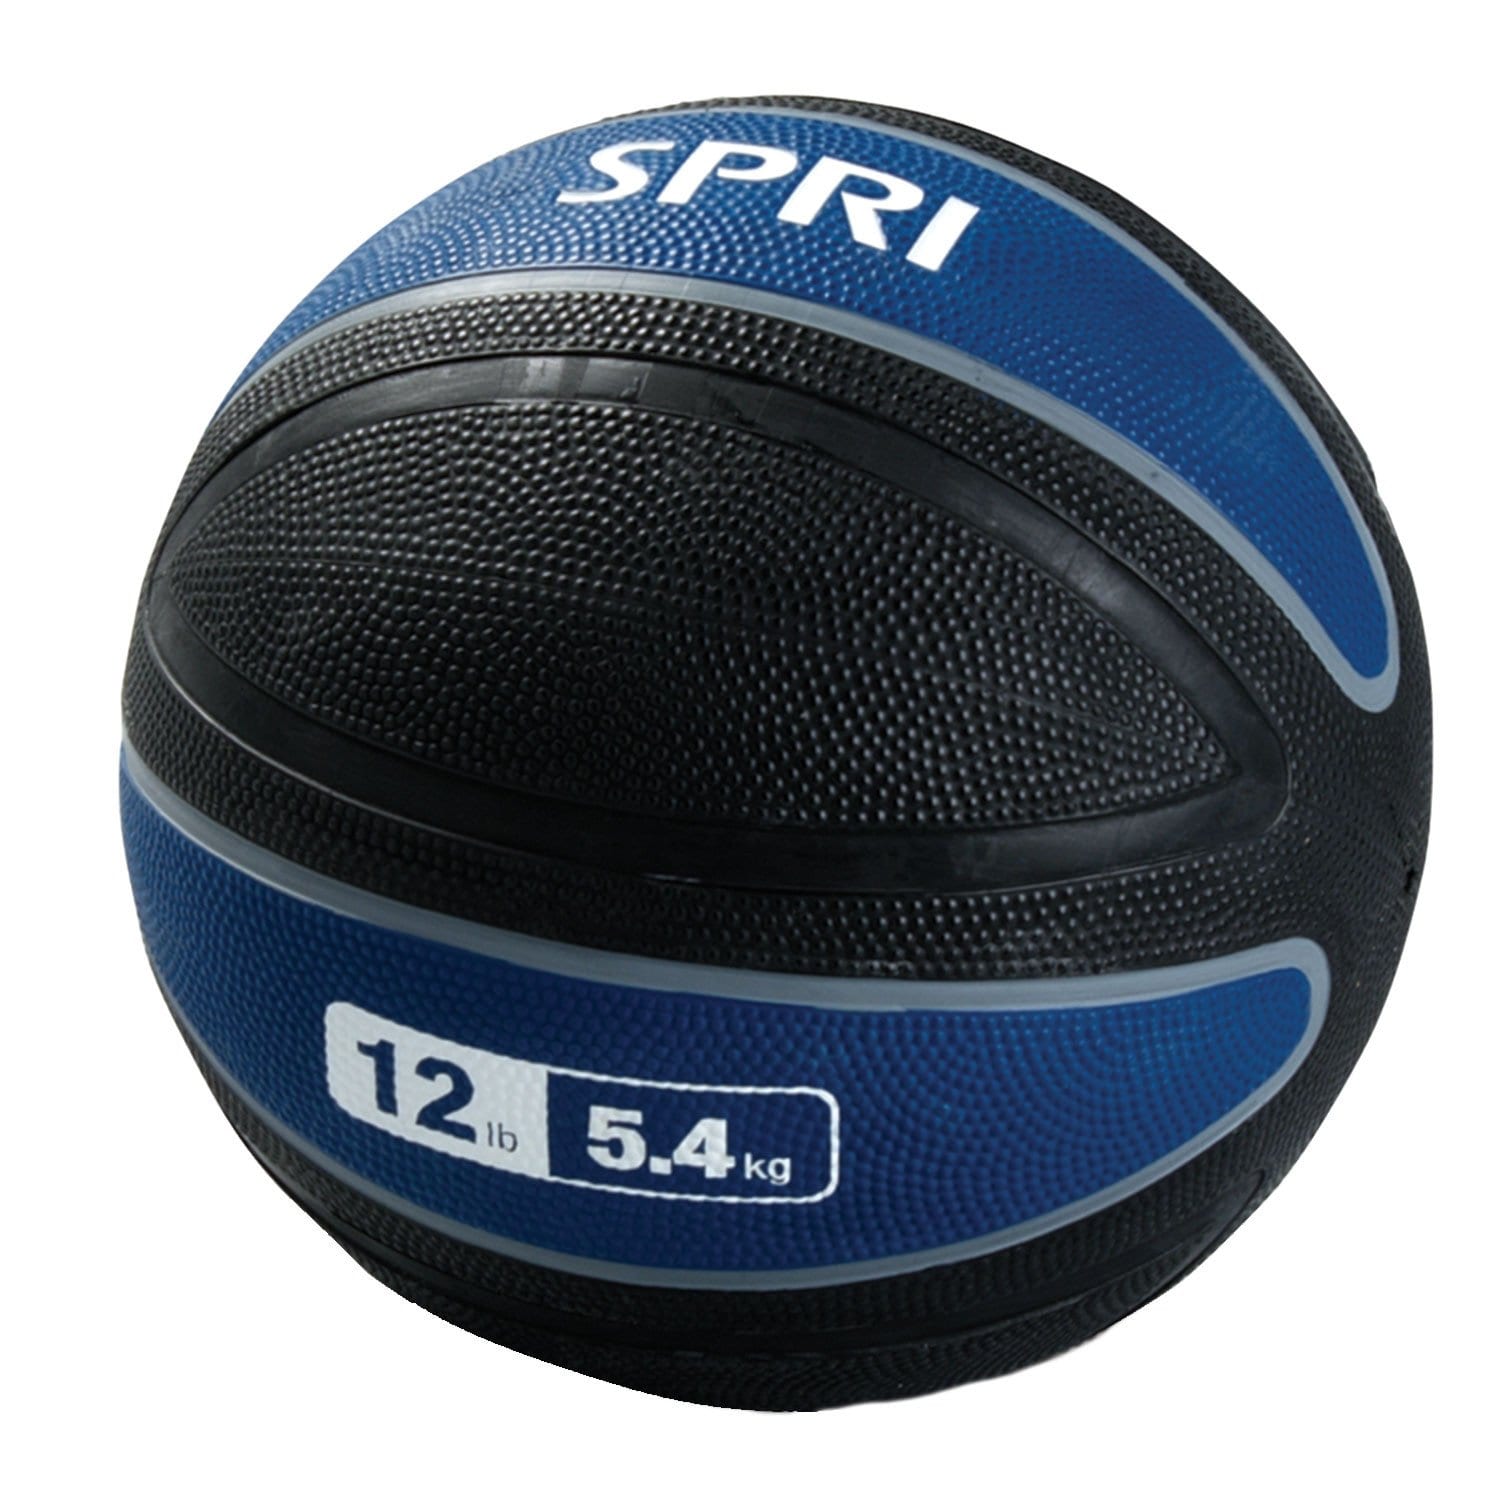 SPRI Xerball Medicine Ball – 12lb